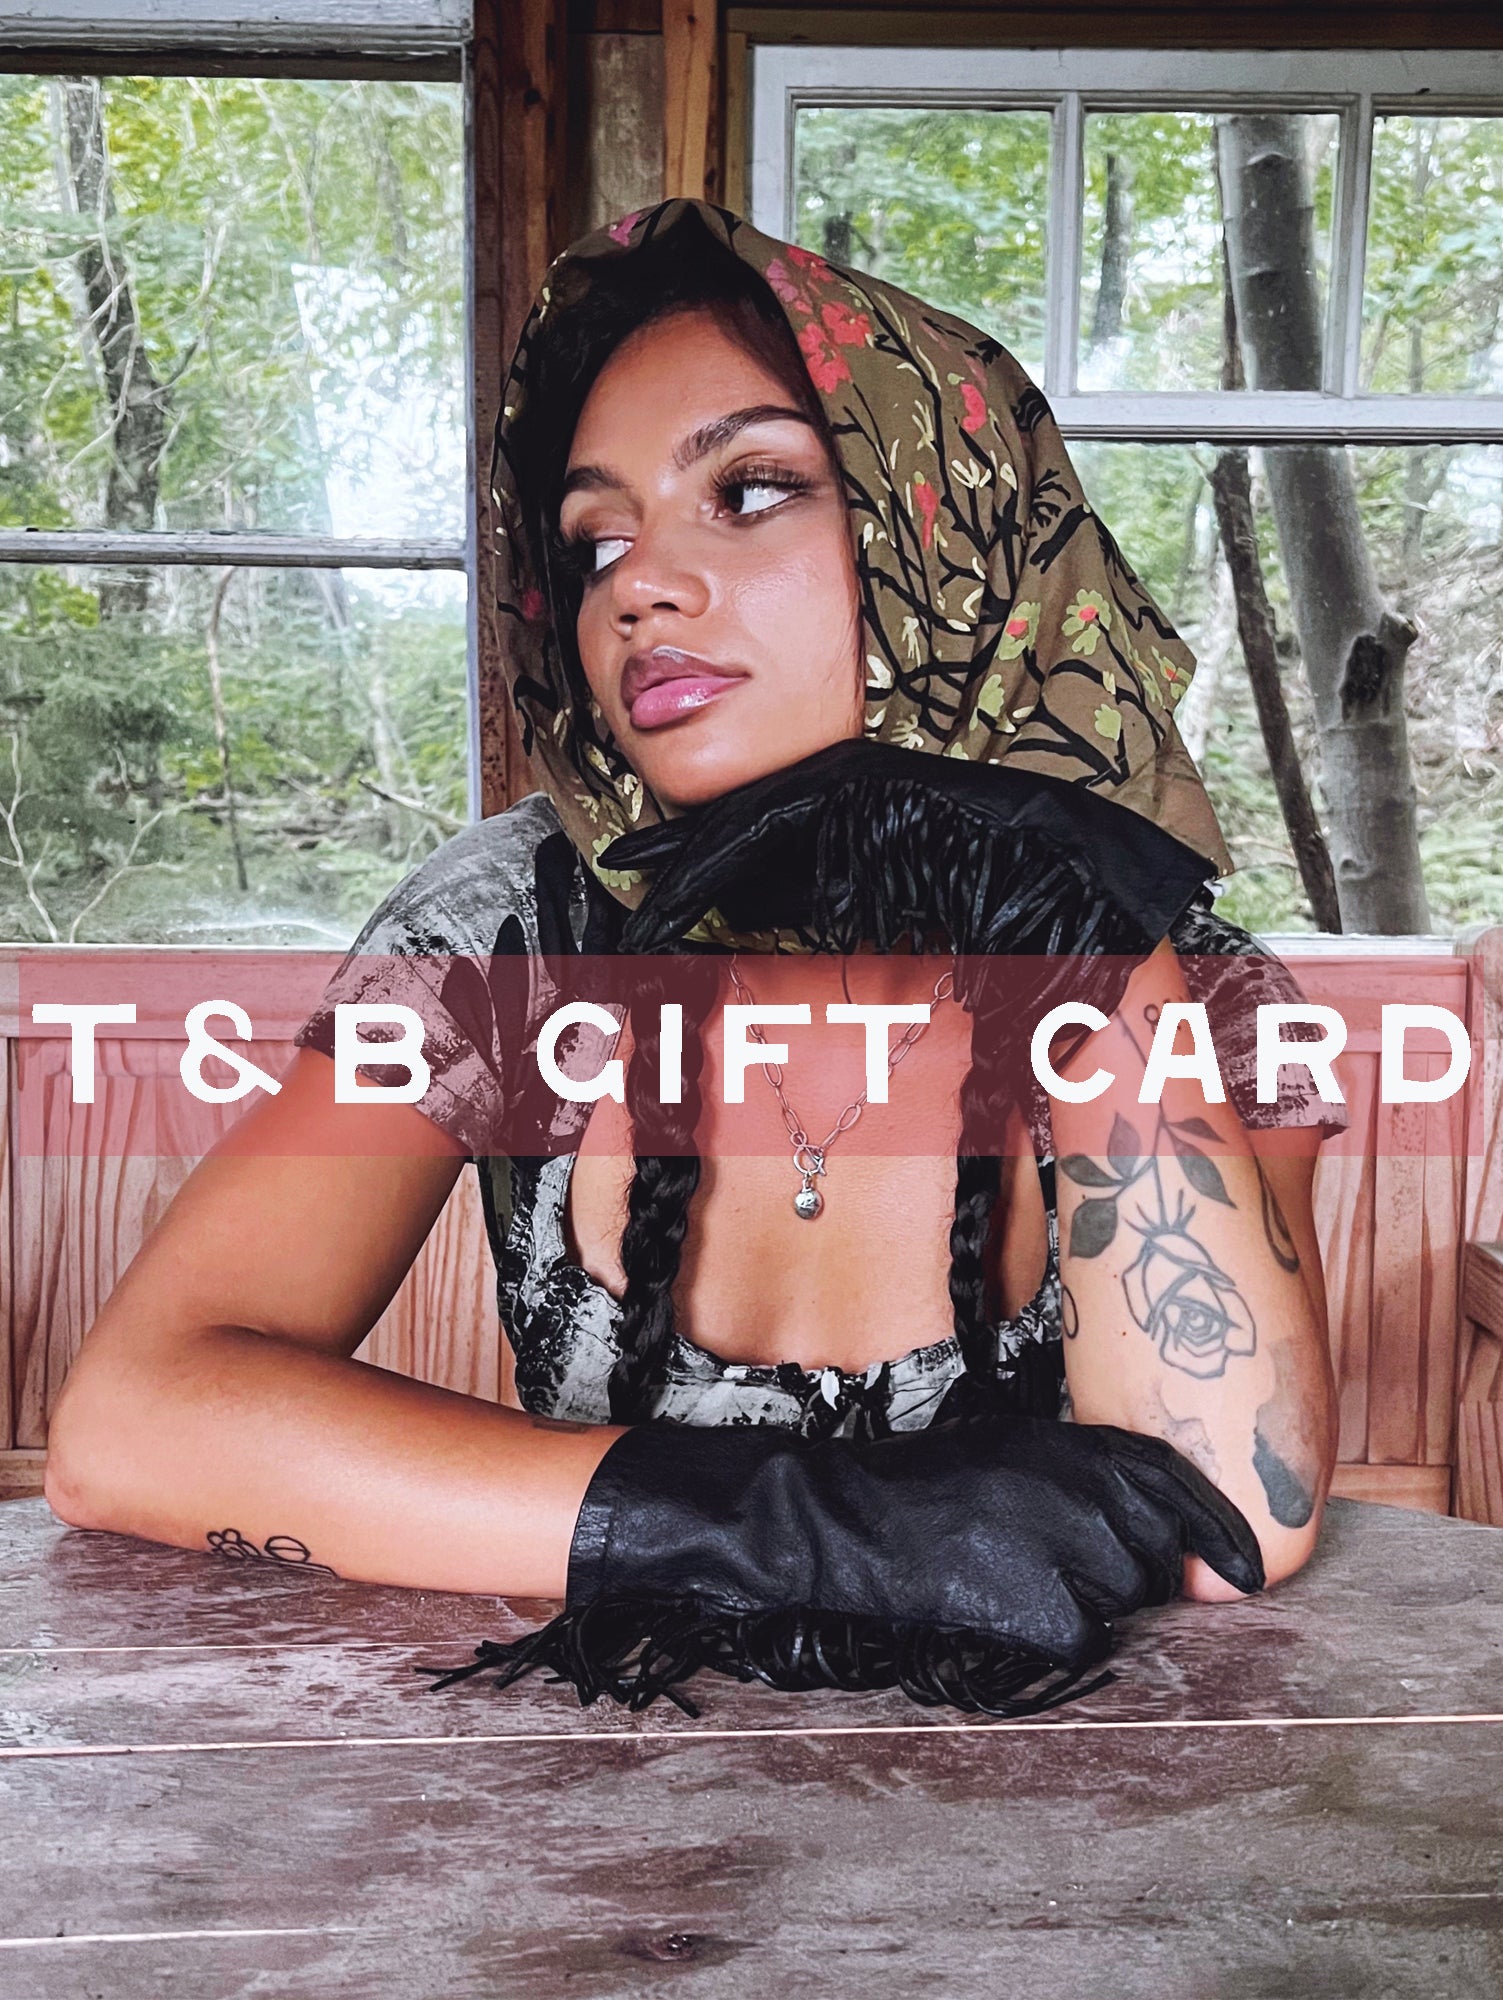 Thief&Bandit Gift Card - Thief and Bandit